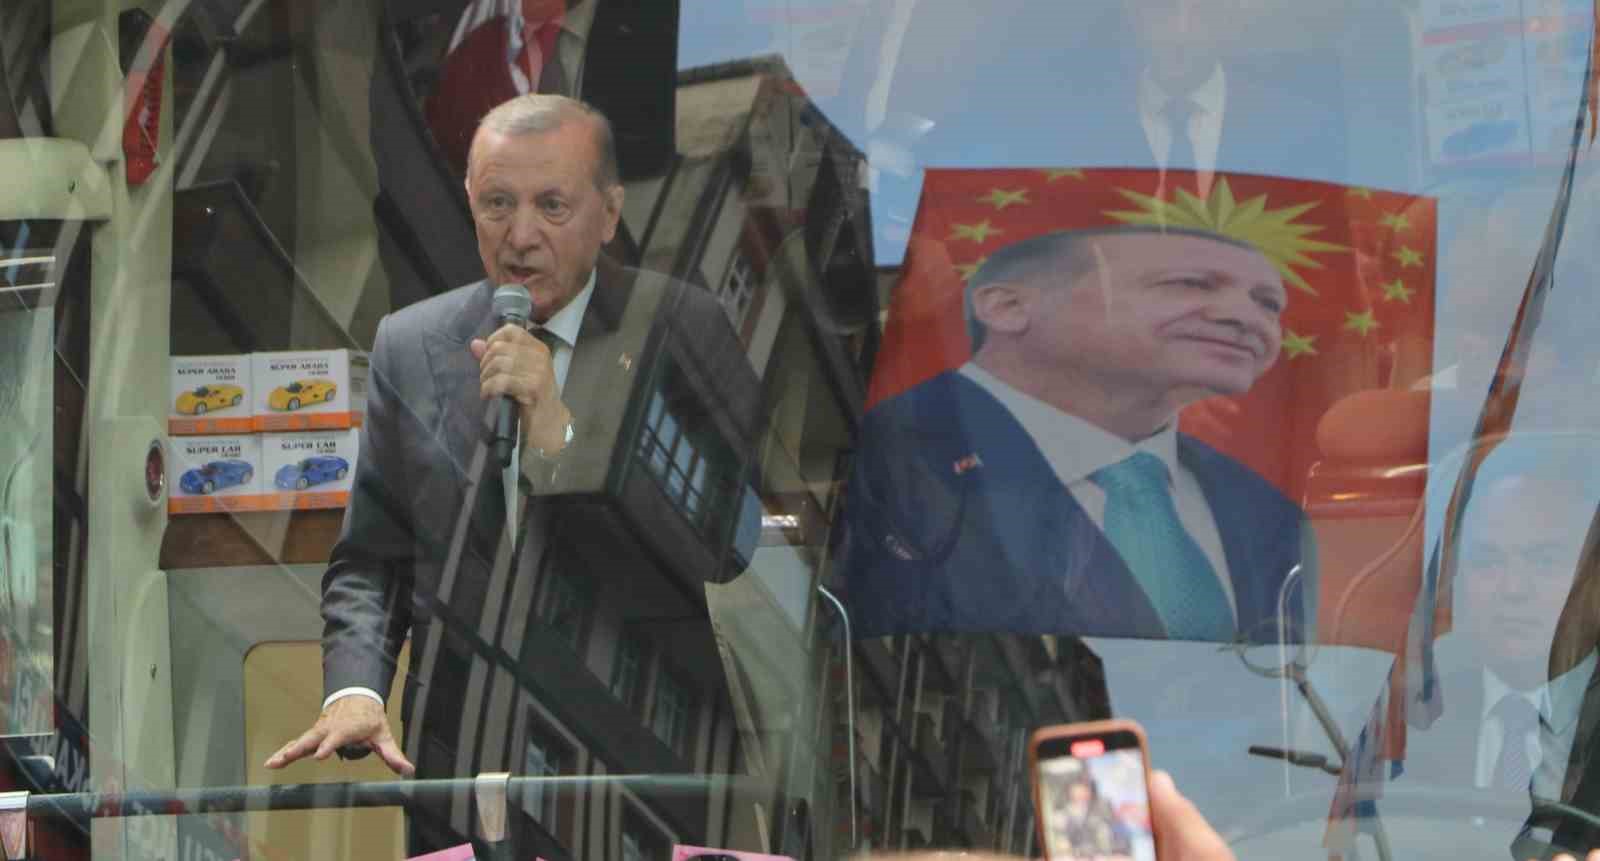 Cumhurbaşkanı Recep Tayyip Erdoğan, memleketi Rize’nin Güneysu ilçesinde kendisini karşılayan hemşehrilerine seslendi. Cumhurbaşkanı Erdoğan, sahil dolgu alanında bulunan Rize Sahil Camii’nin kaydığına işaret ederek, şehir merkezinde büyük bir cami yapılacağıın söyledi.